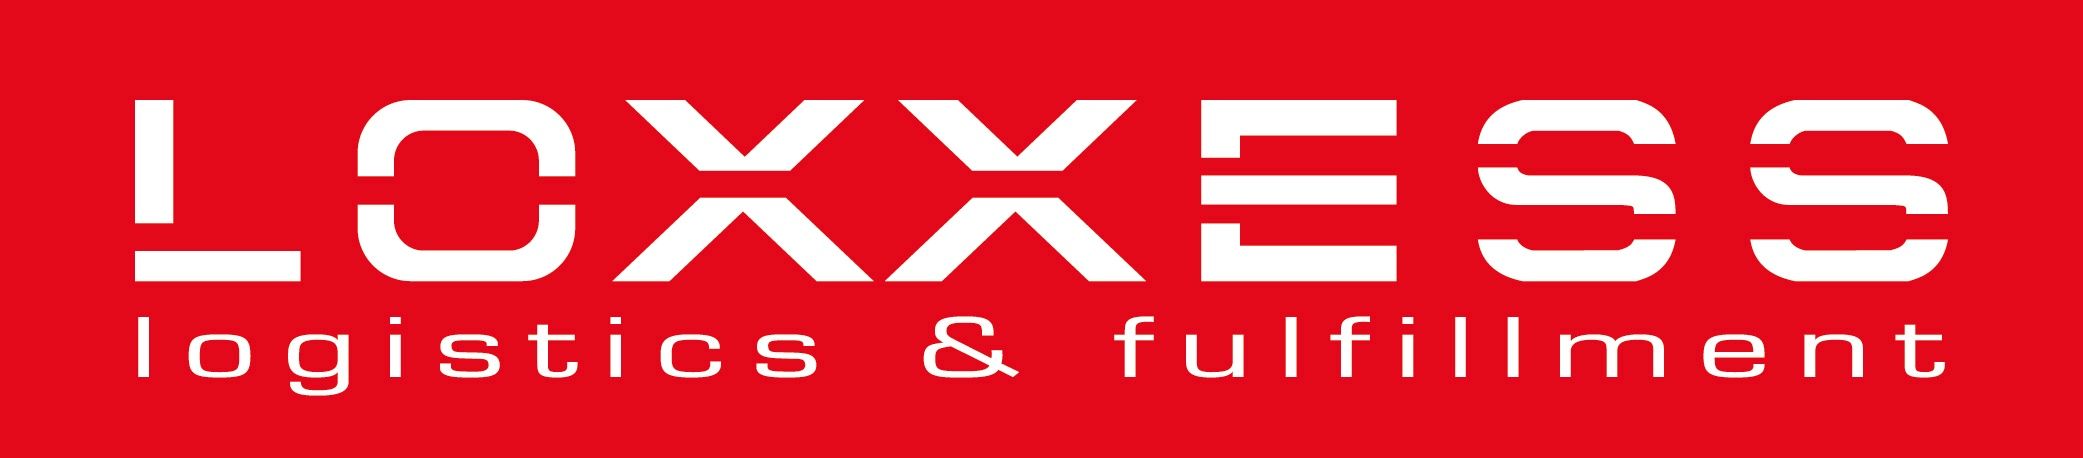 Logo-Loxxess